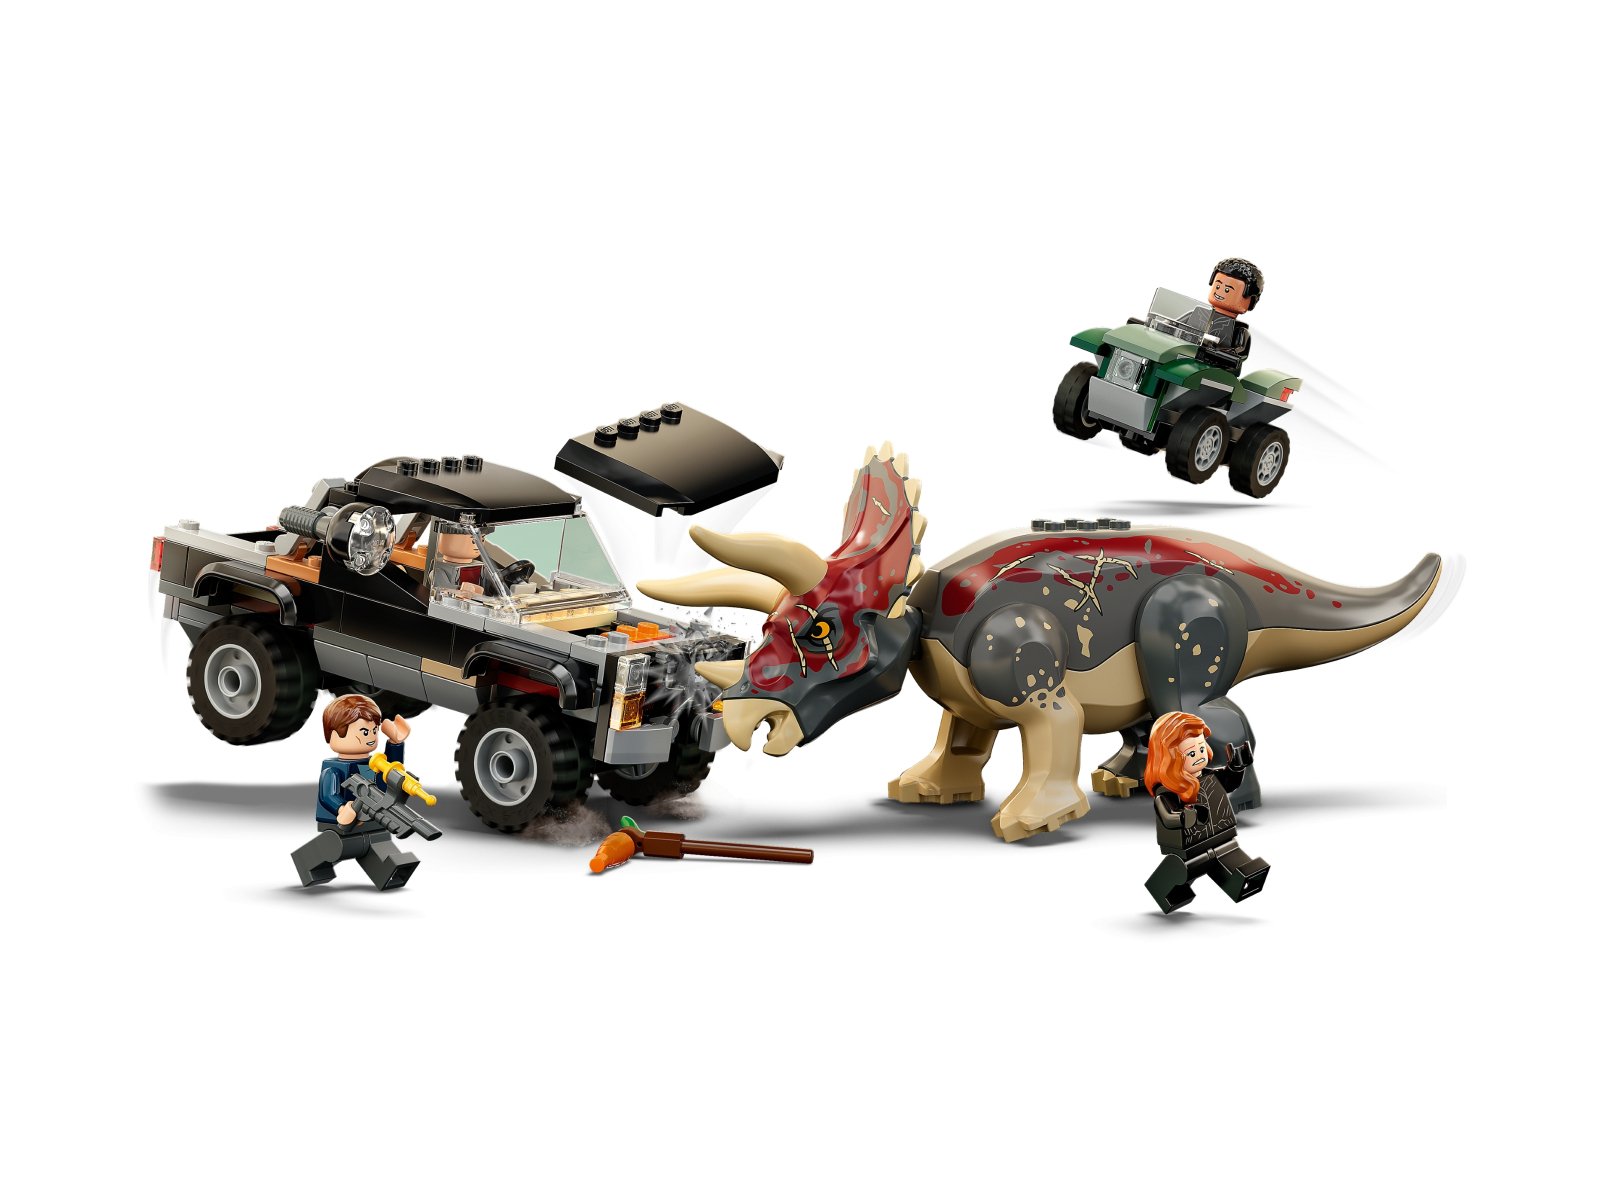 LEGO Jurassic World Triceratops i zasadzka z pick-upem 76950